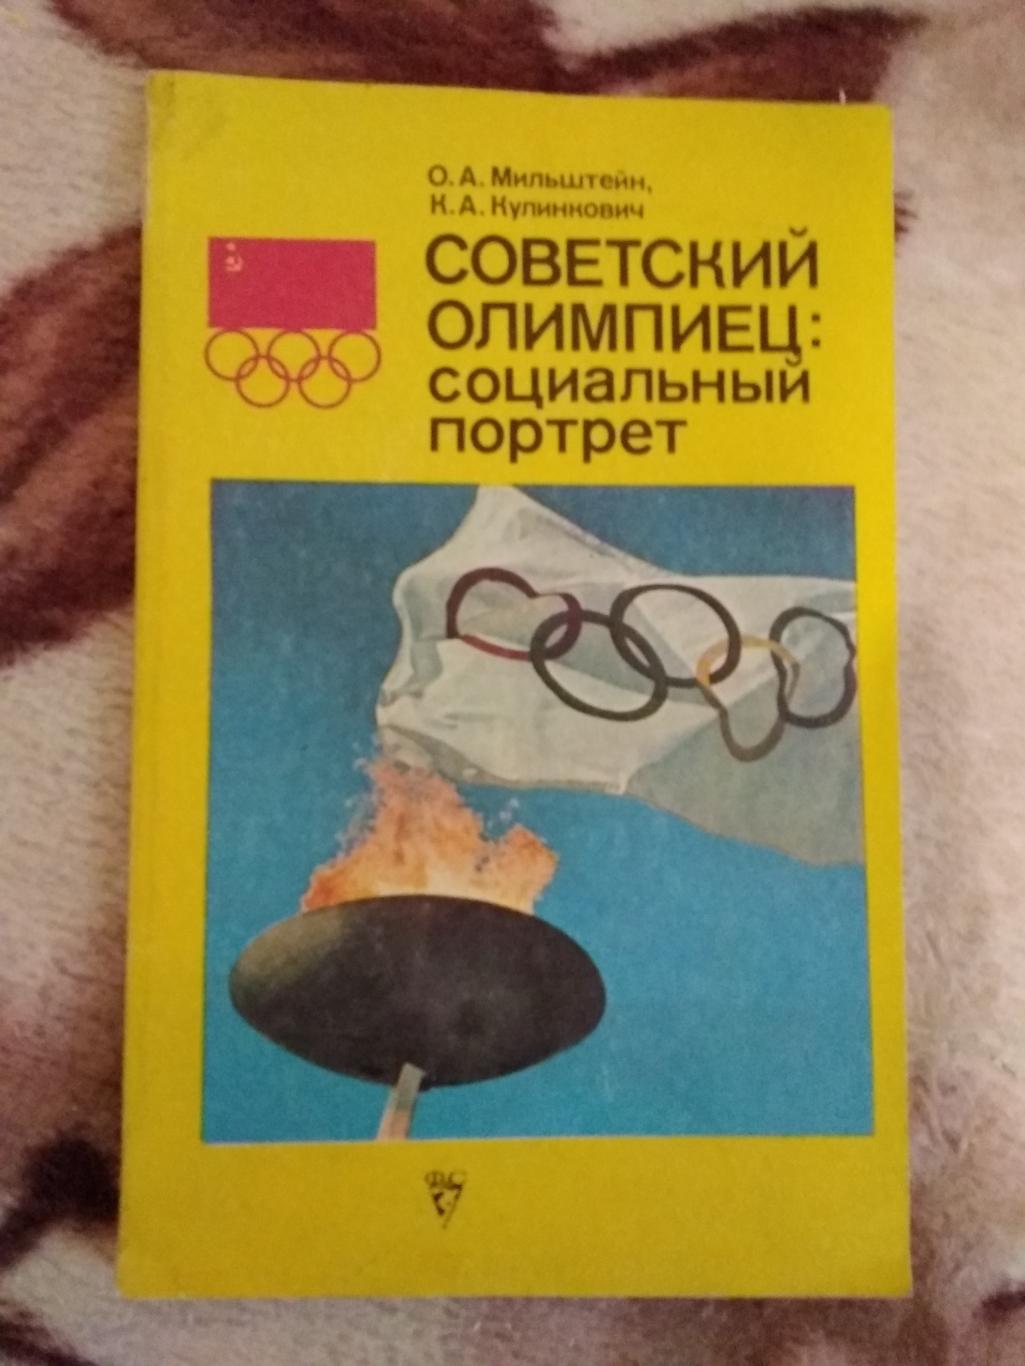 Спорт. О.Мильштейн,К.Кулинкович. Советский олимпиец:социальный портрет.ФиС 1979.